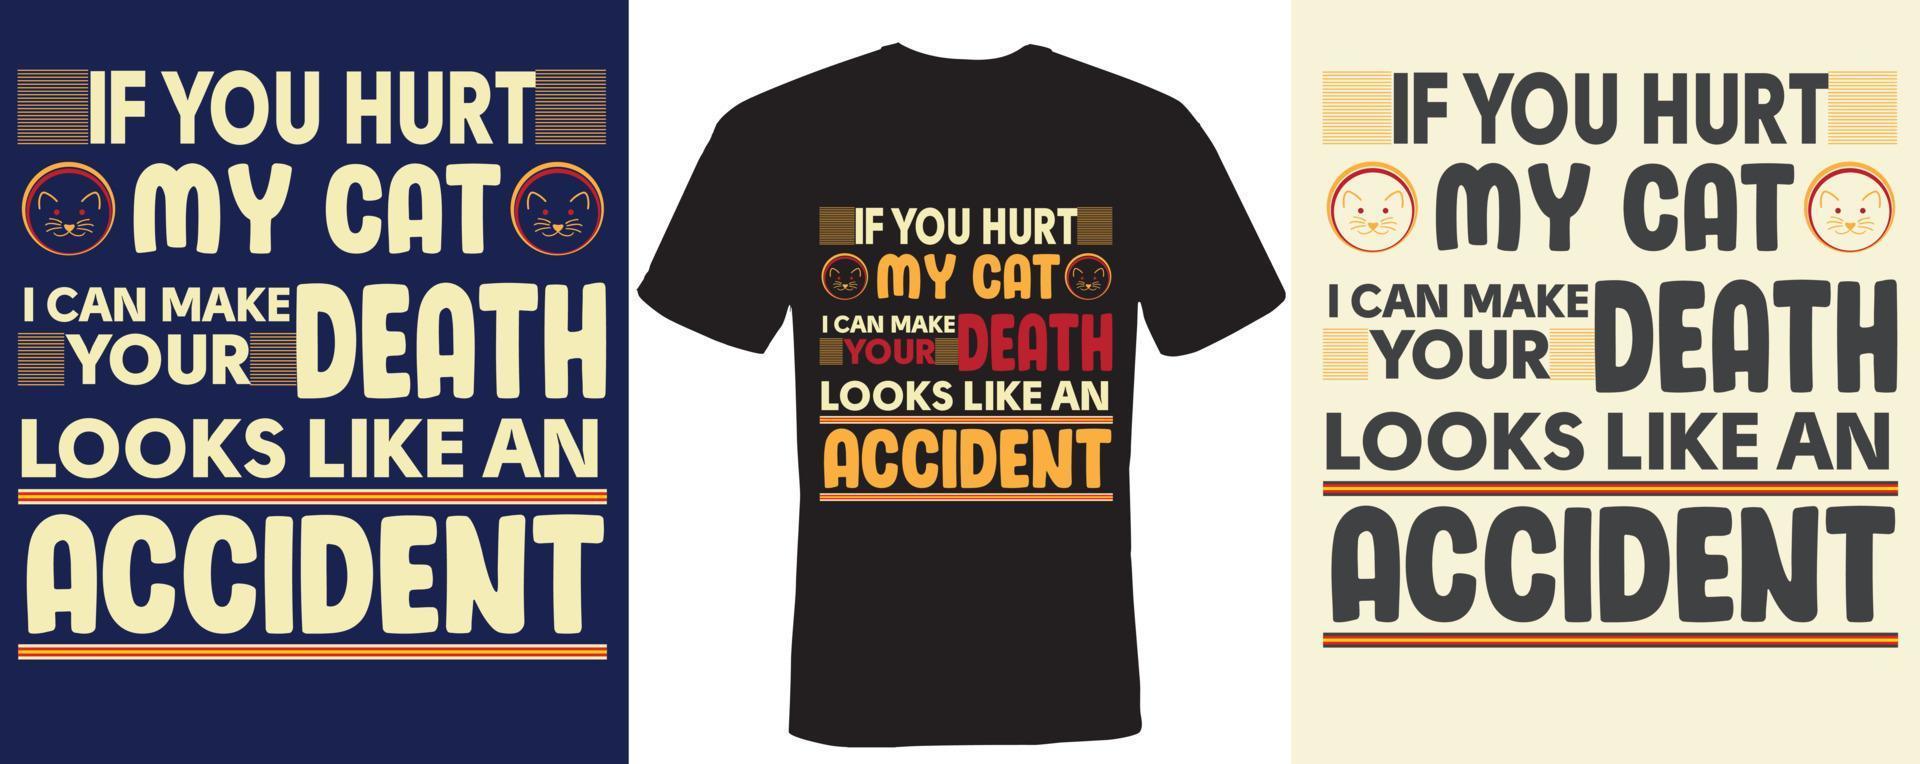 se você machucar meu gato eu posso fazer sua morte parecer um acidente design de camiseta para gato vetor